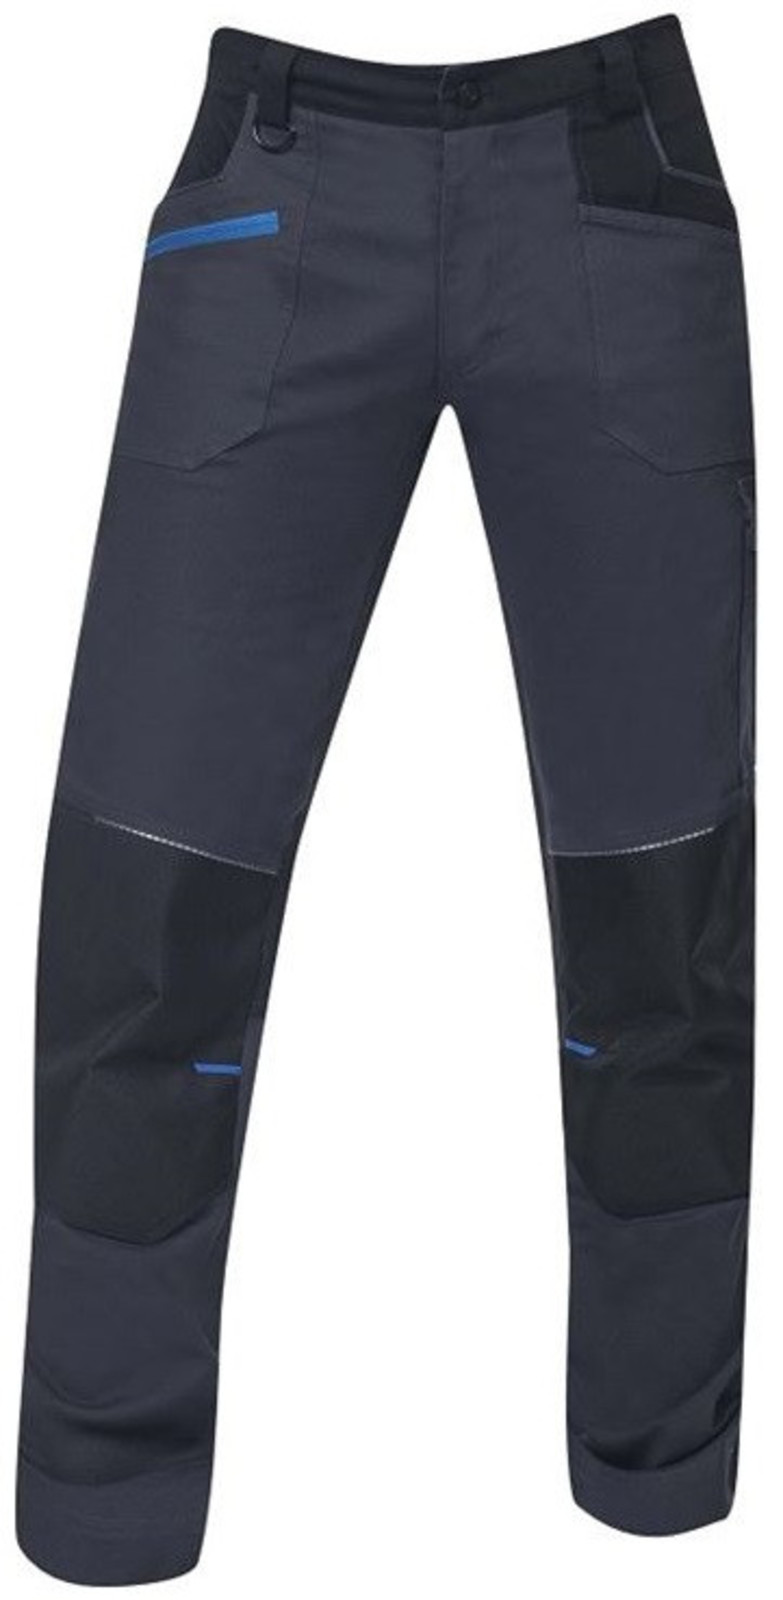 Pánske strečové montérkové nohavice Ardon 4Xstretch - veľkosť: 58, farba: tmavo šedá